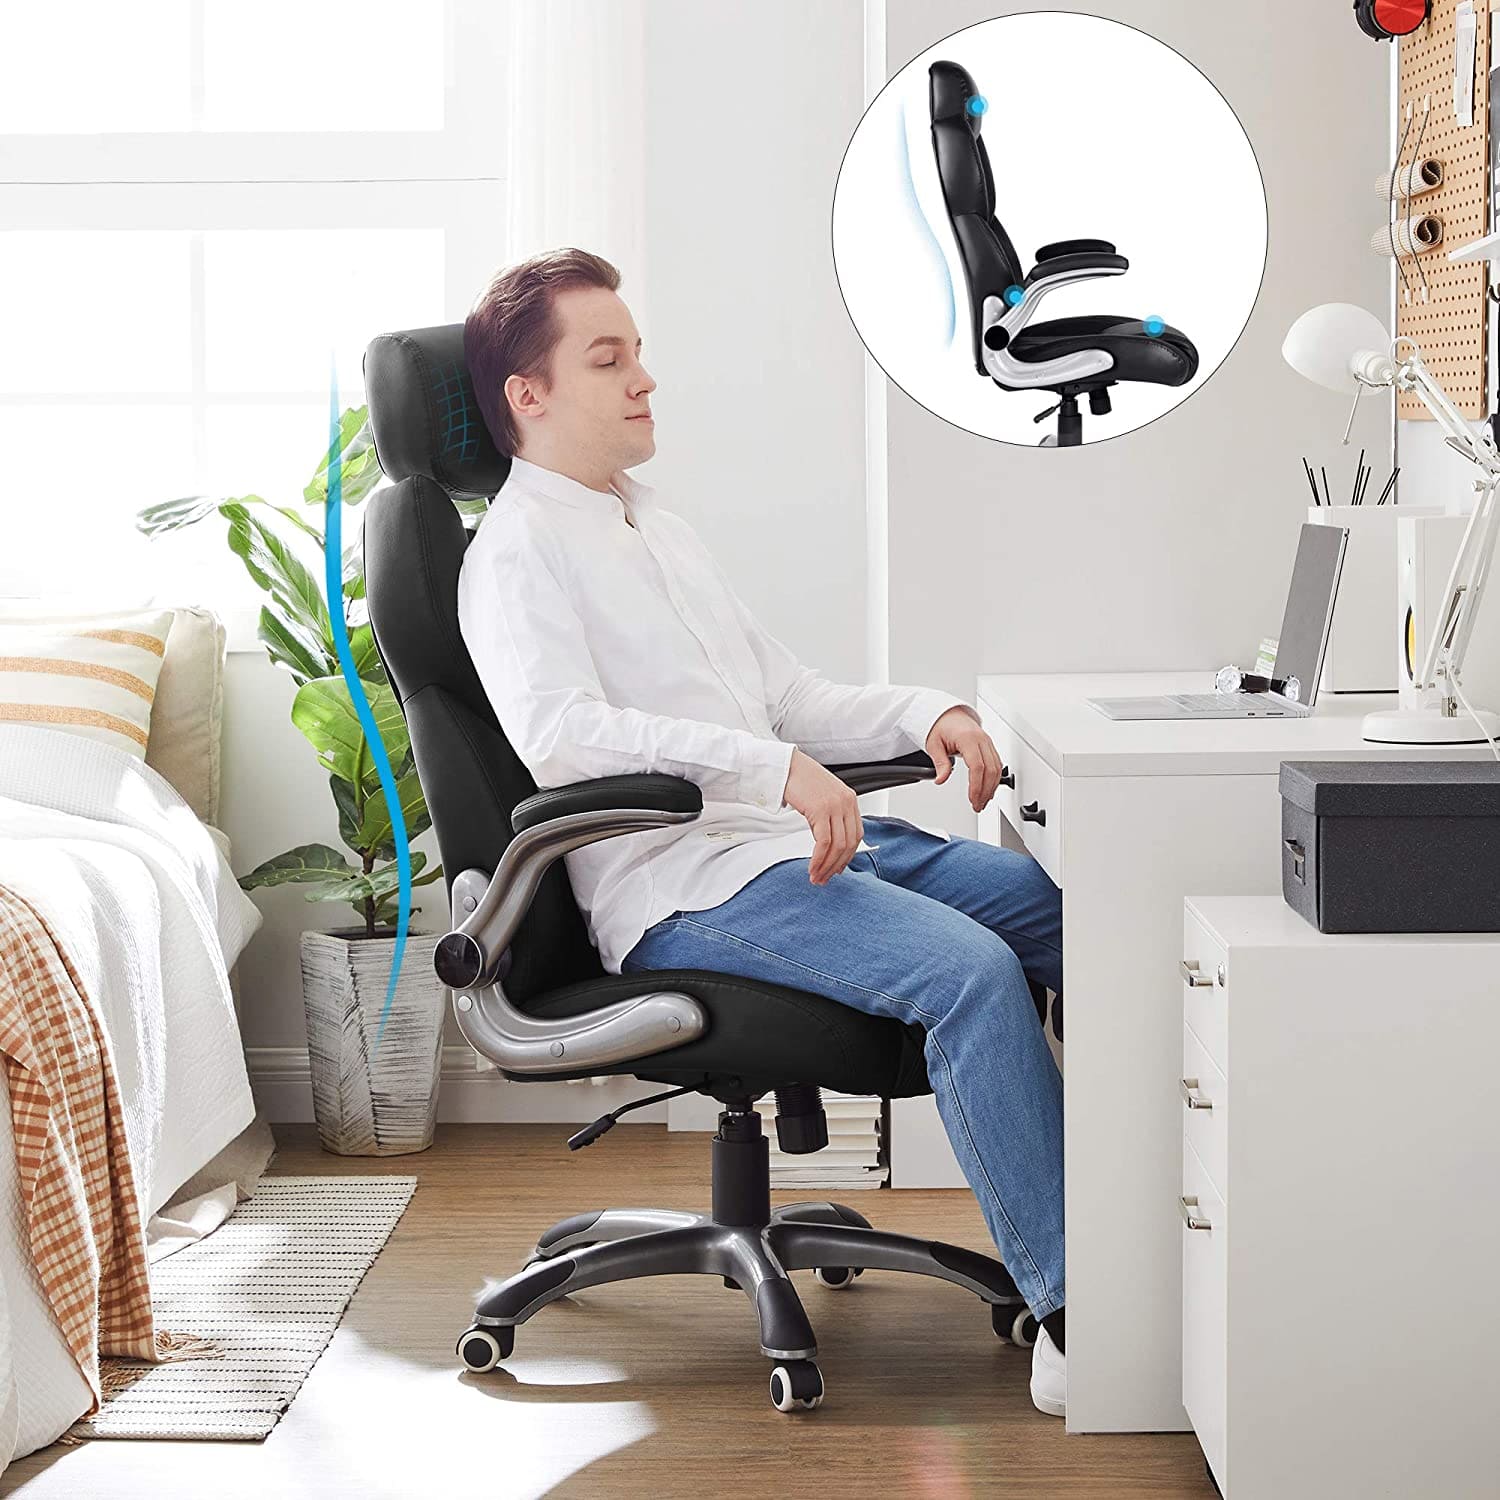 Silla gaming, silla de oficina, piel sintética. Cuerpo duradero, soporta hasta 150 kg, Las ruedas no rayan, SONGMICS